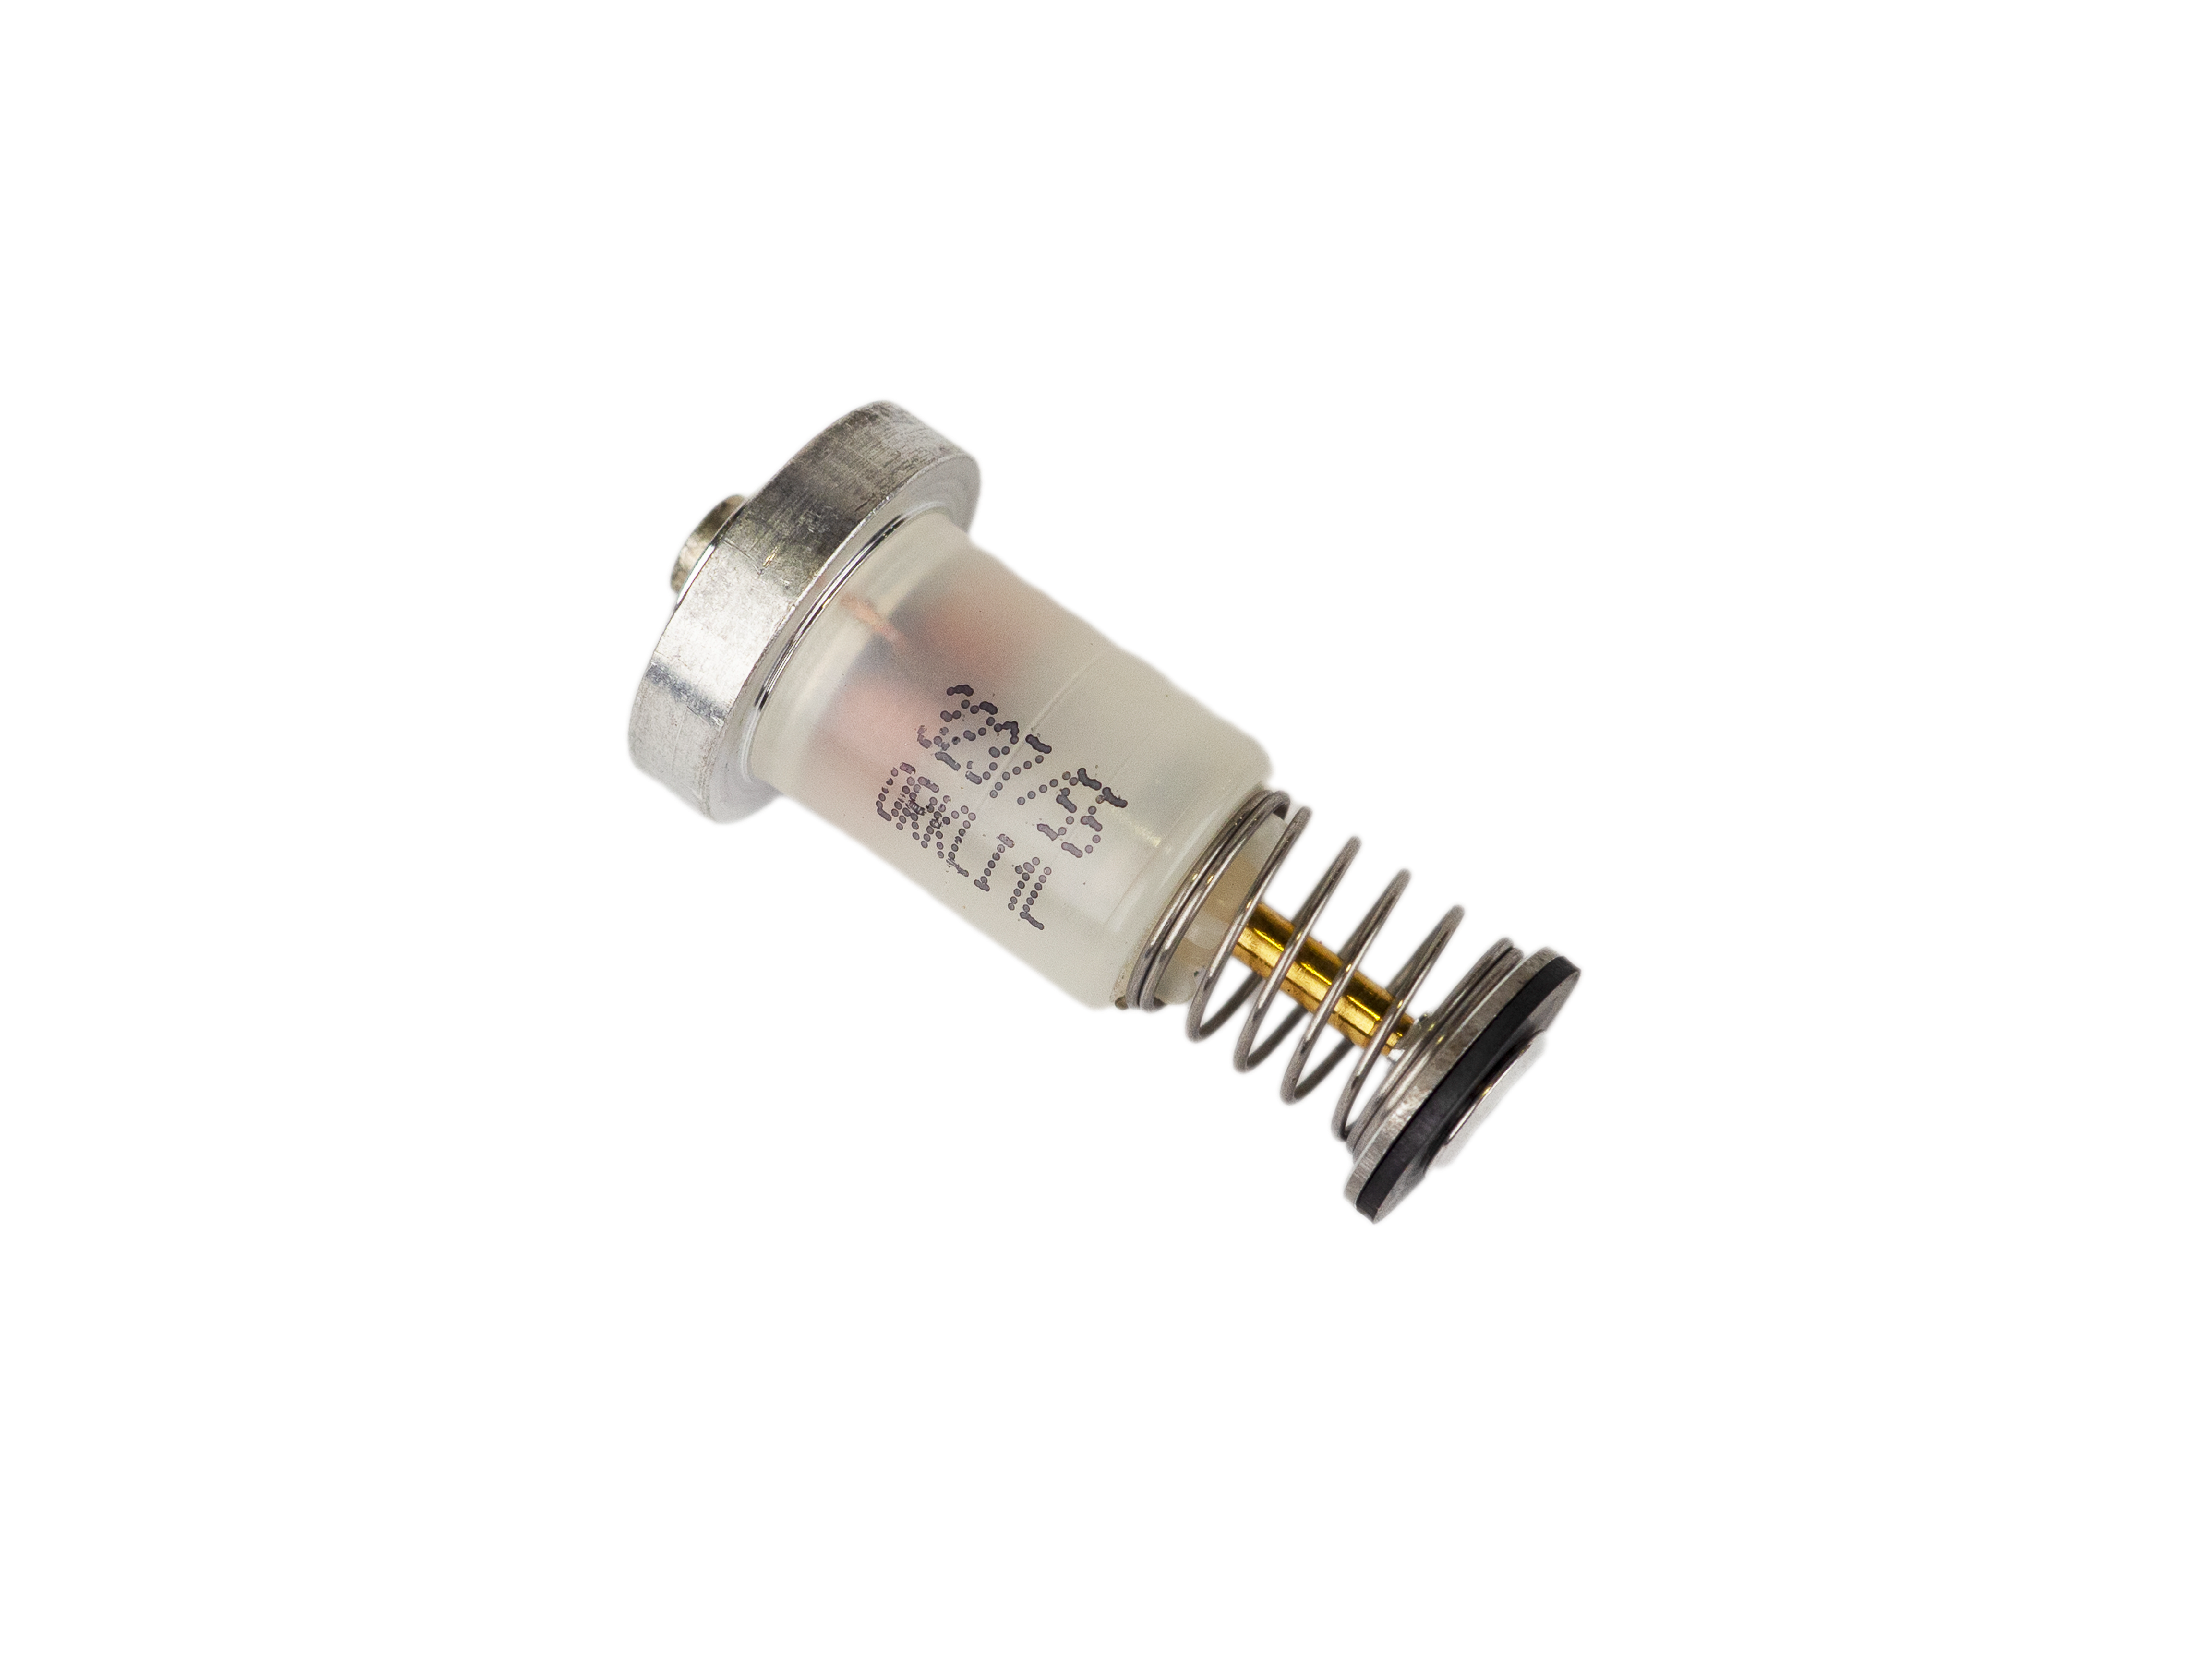 Электромагнитный клапан для газовой колонки Bosch WR10-2P, WR13-2P, WR15-2P